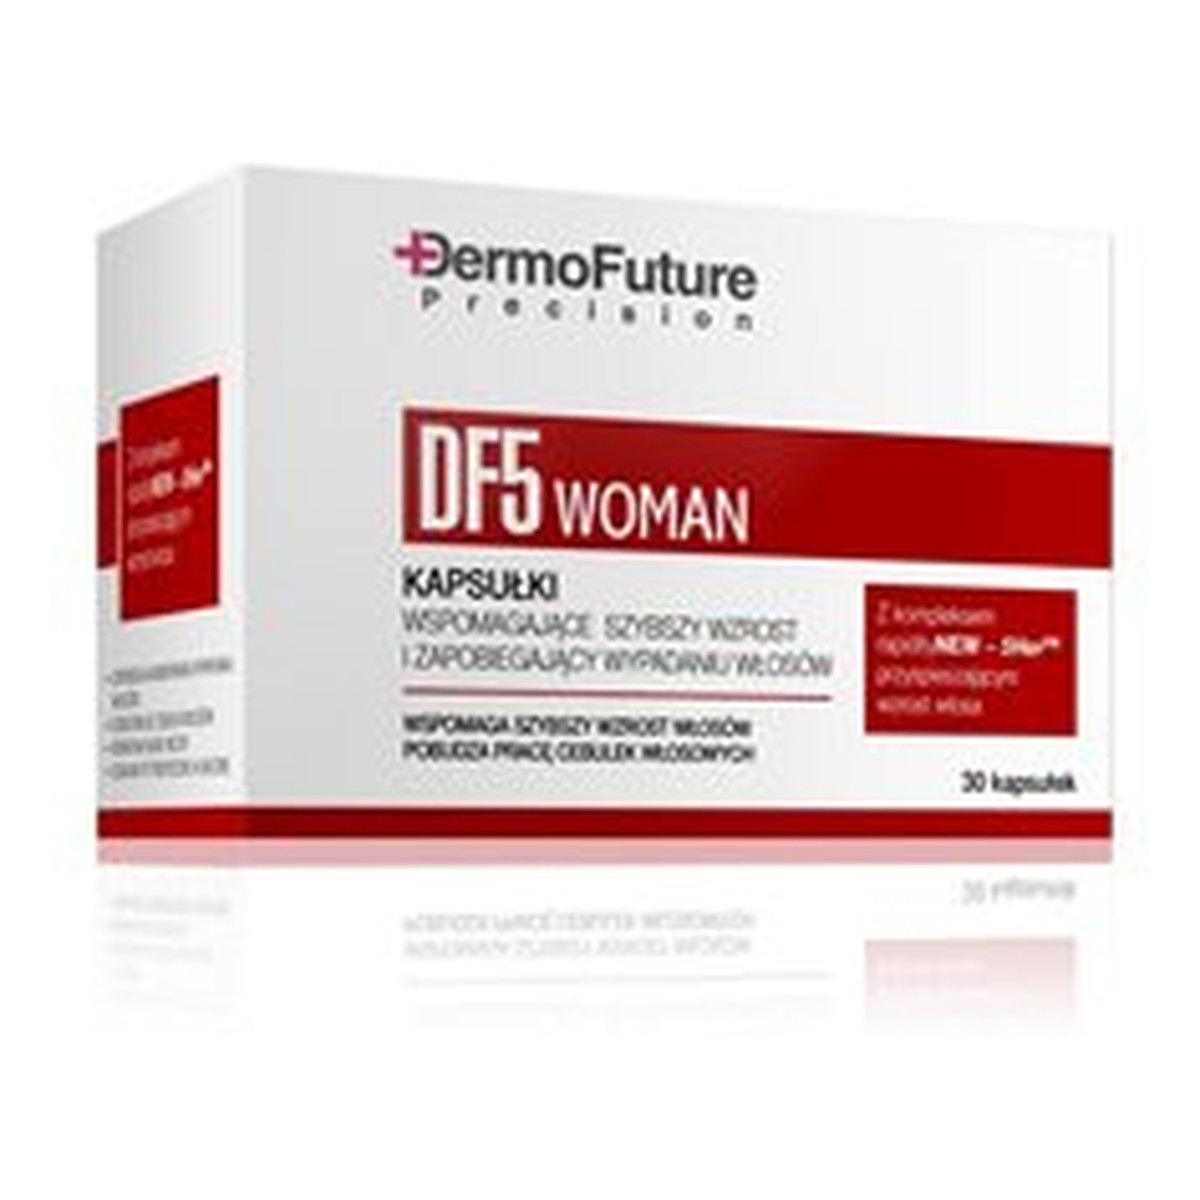 DermoFuture Woman DF5 Kapsułki Wspomagające Szybszy Wzrost i Zapobiegające Wypadaniu Włosów